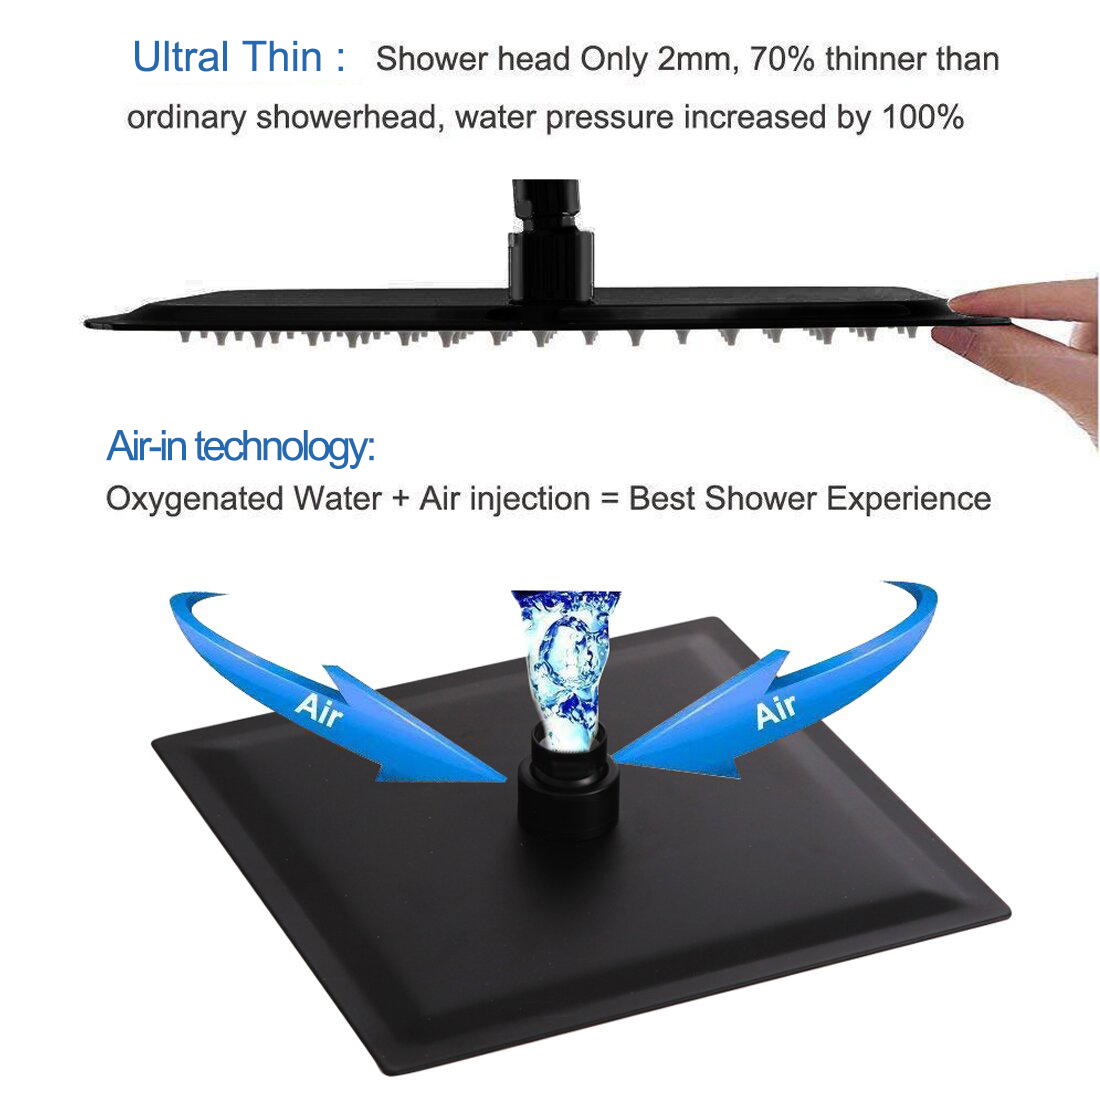 Hersteller von Aquacubic China-Duschsystemen, mattschwarzes Einhand-Duschset mit Wannenauslauf